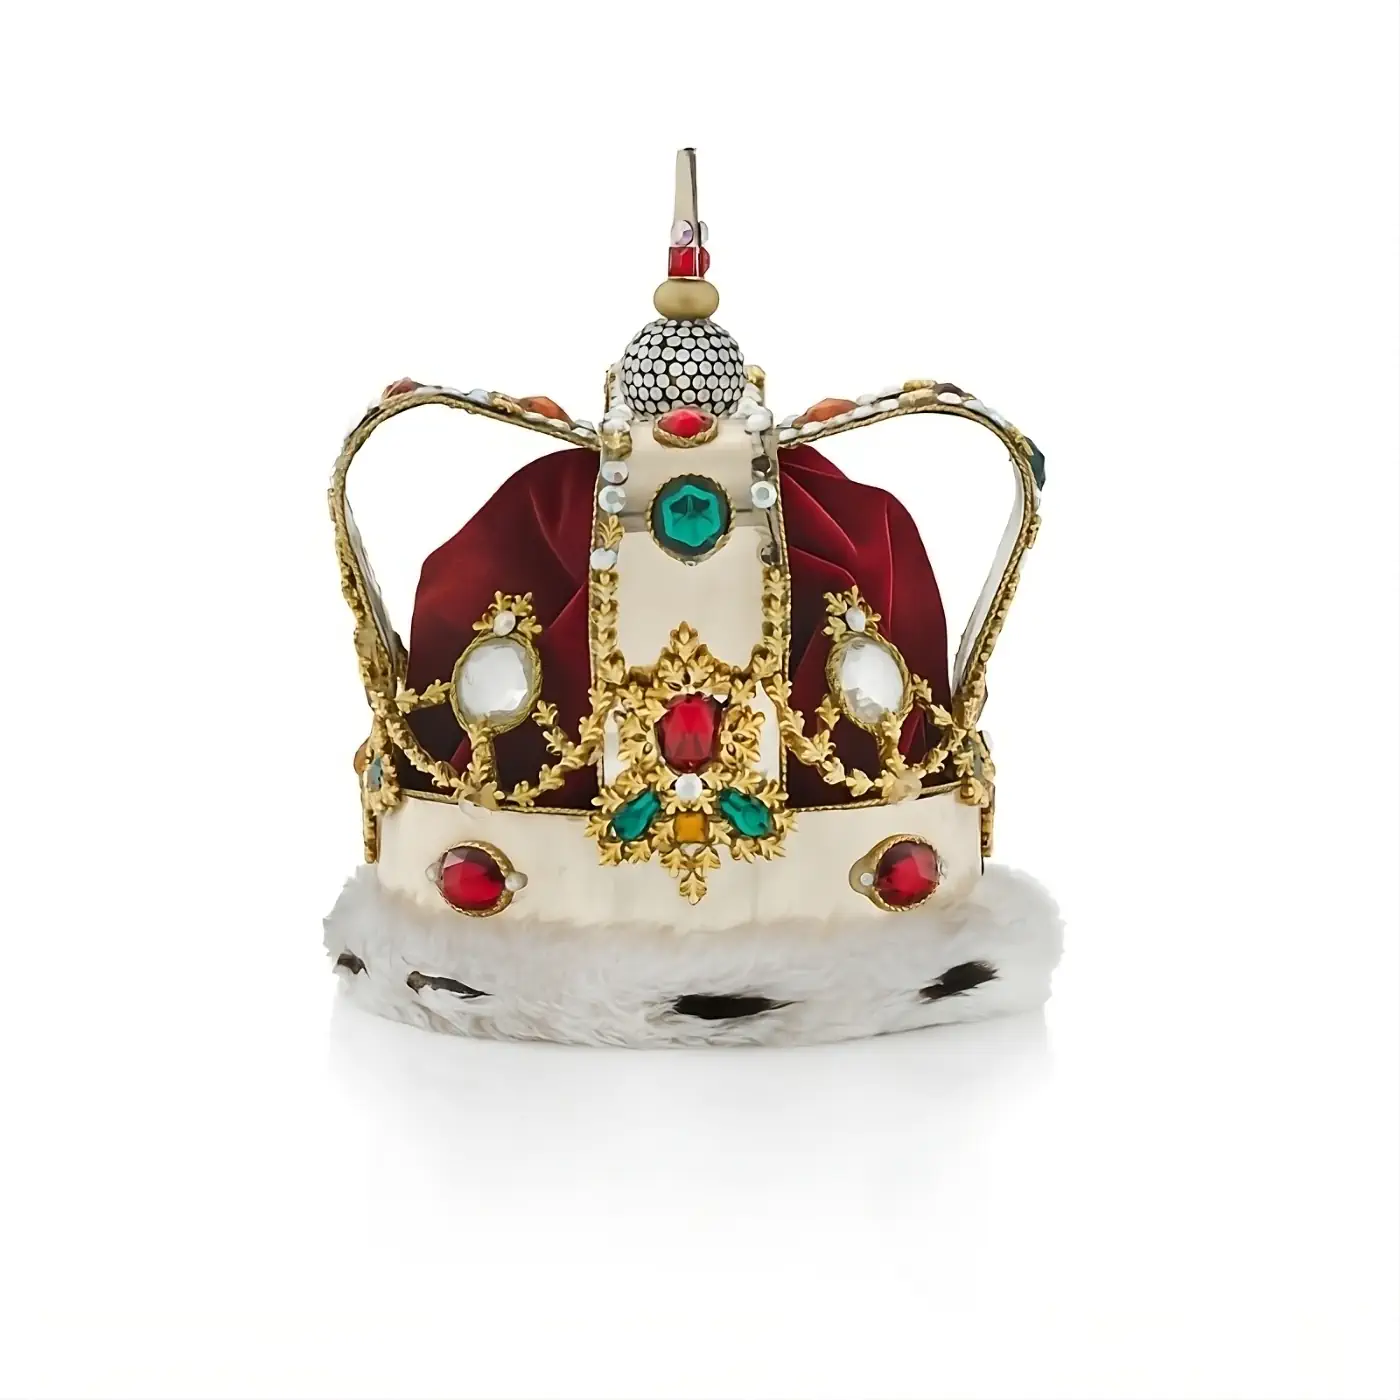 L'ensemble couronne et cape emblématique de Freddie Mercury, porté tout au long de la tournée "Magic", du 7 juin au 9 août 1986